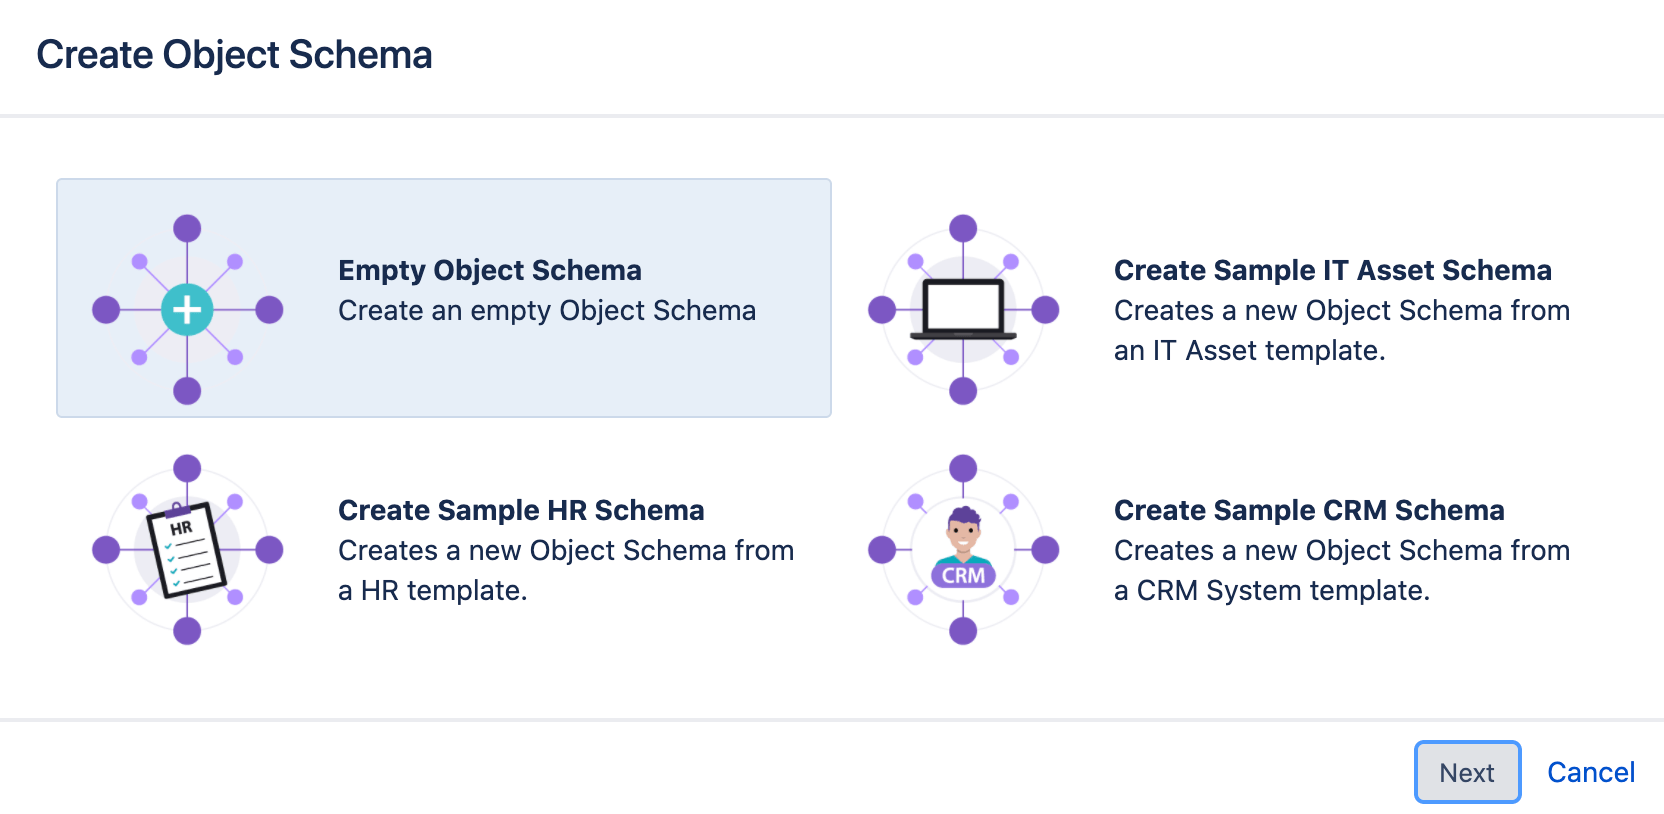 Modulo di creazione dello schema di oggetti con le opzioni di schema vuoto, lo schema di asset IT, lo schema delle risorse umane e lo schema CRM.